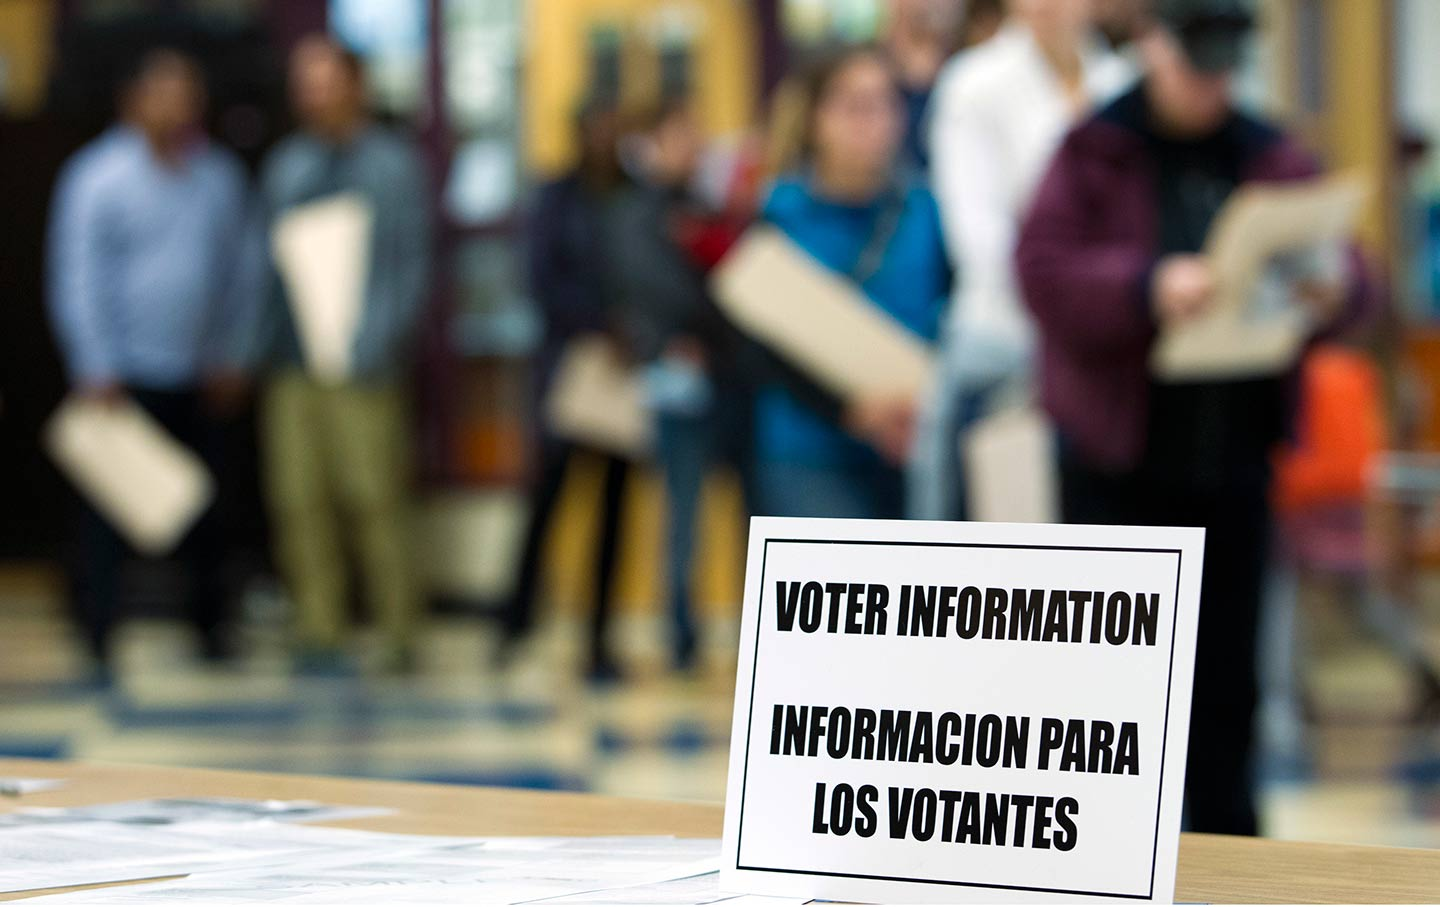 Voter Information/Informacion Para Los Votantes graphic